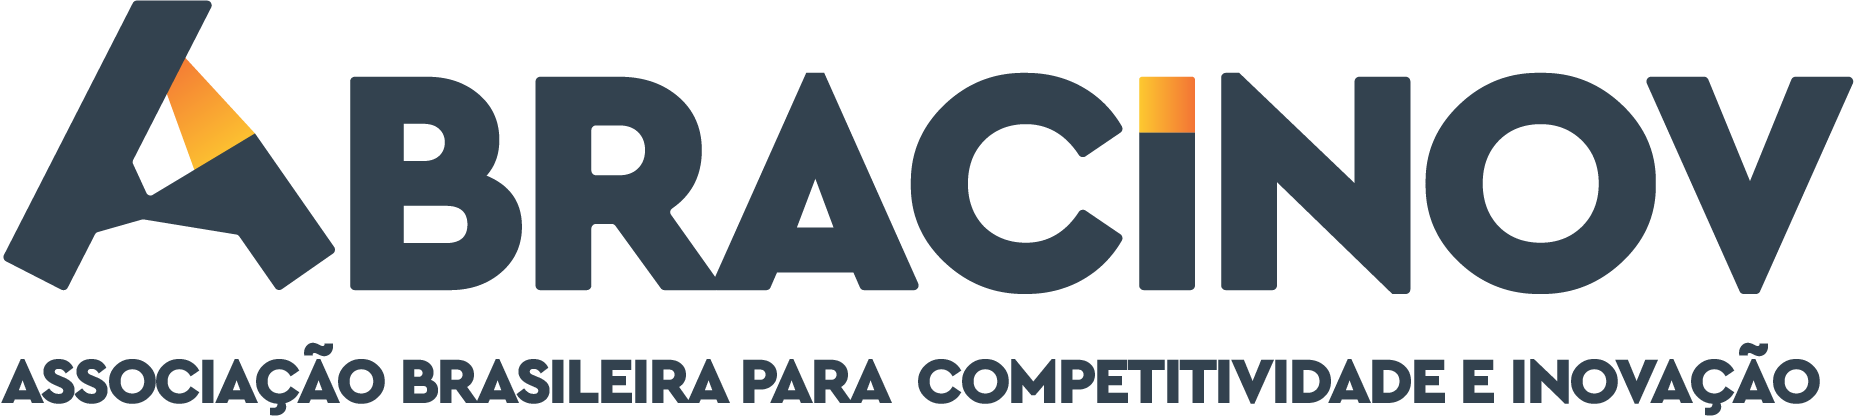 Associação Brasileira para Competitividade e Inovação